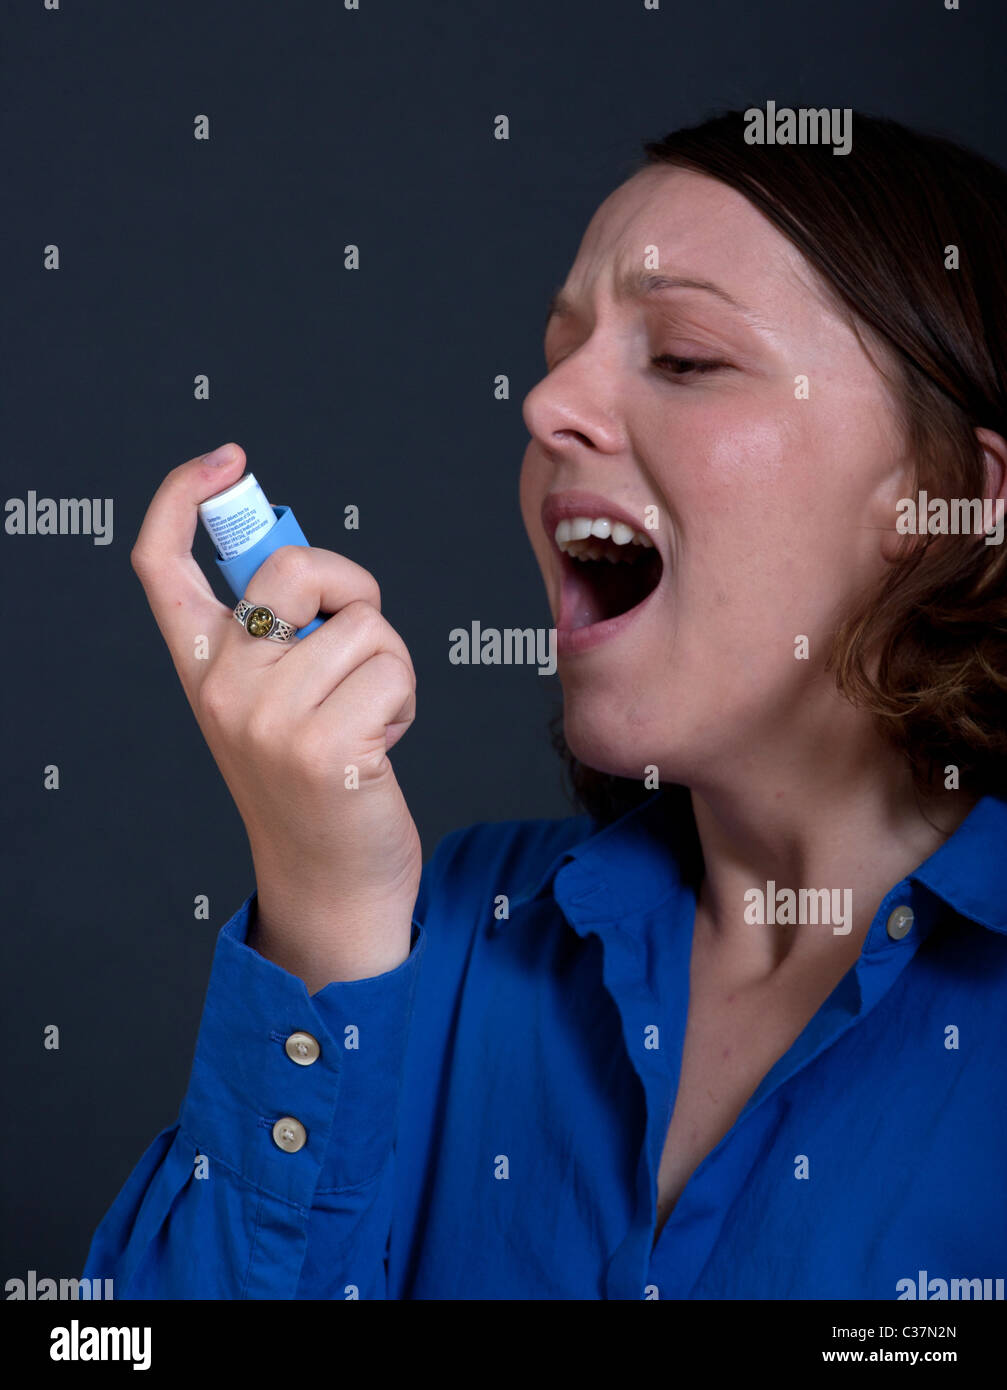 Femme ayant une crise d'asthme Banque D'Images